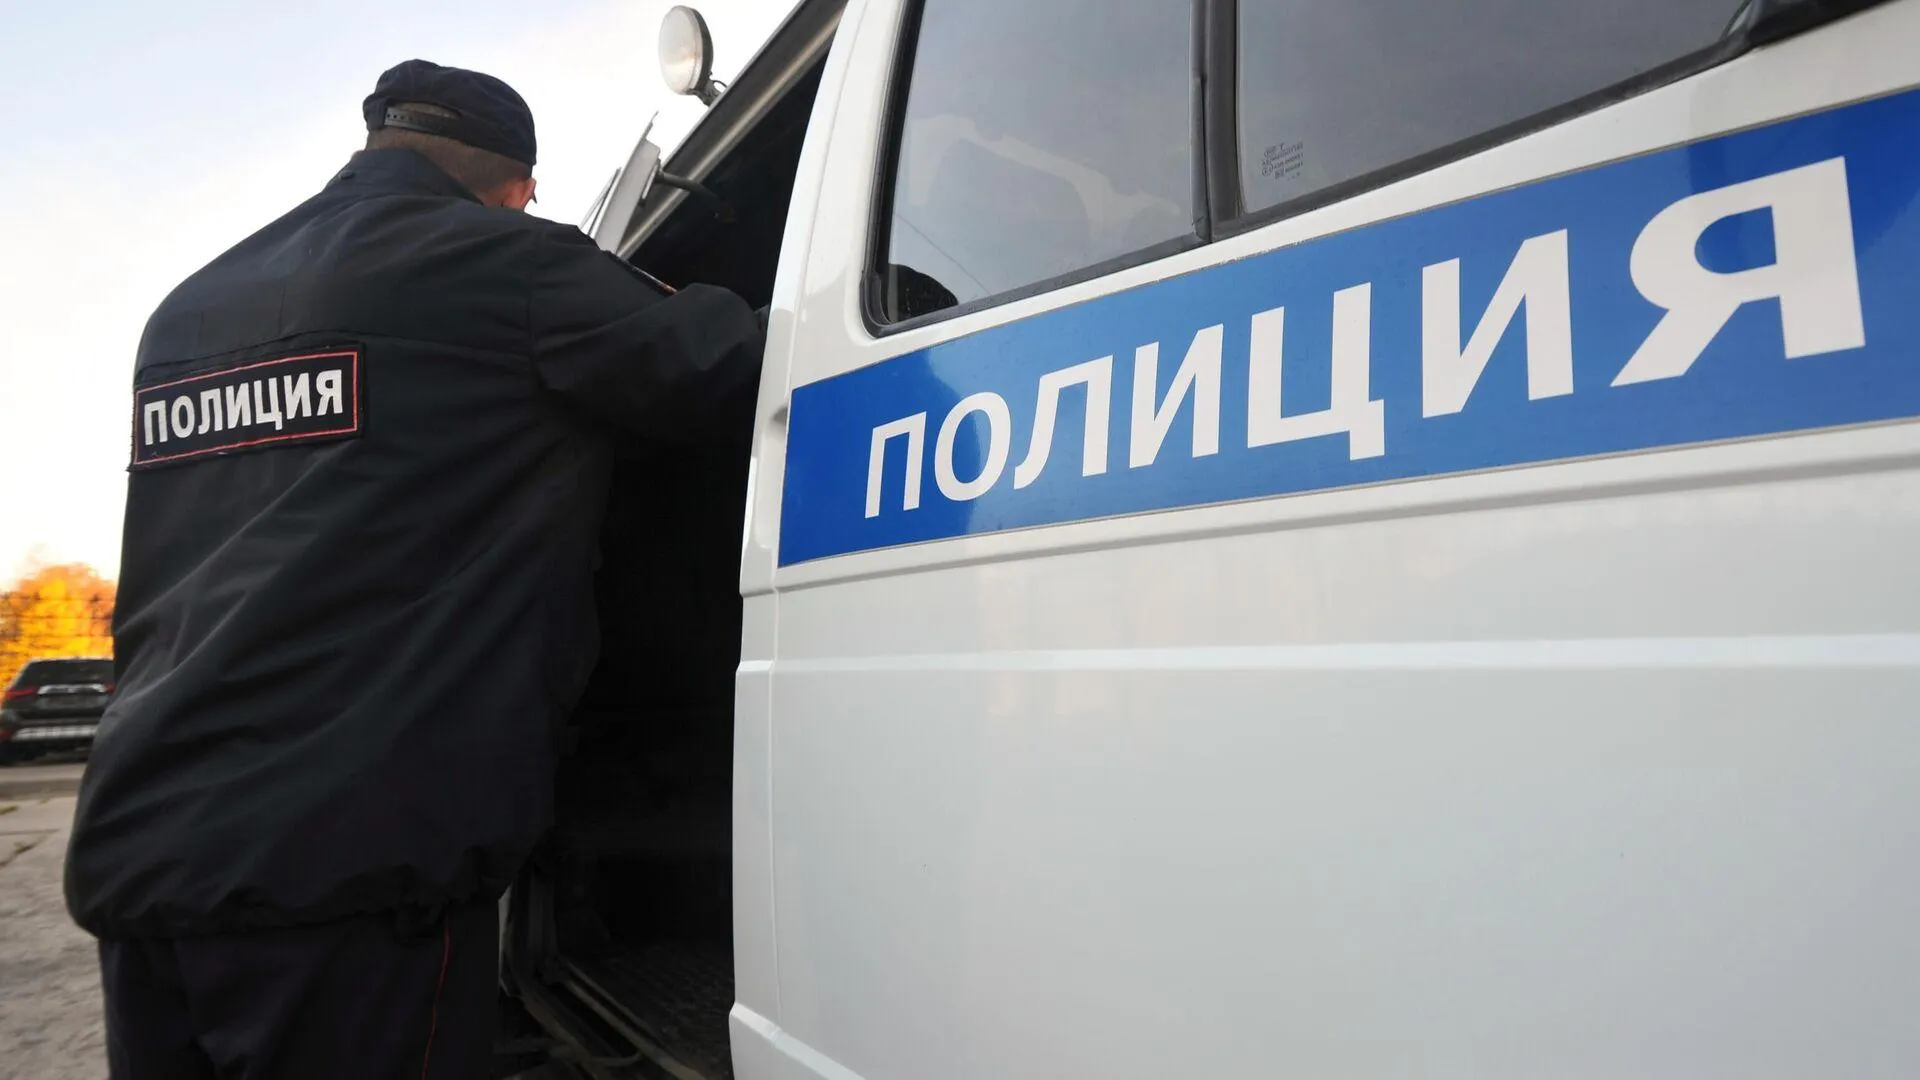 Мужчина с пистолетом напал на сотрудницу банка в Москве